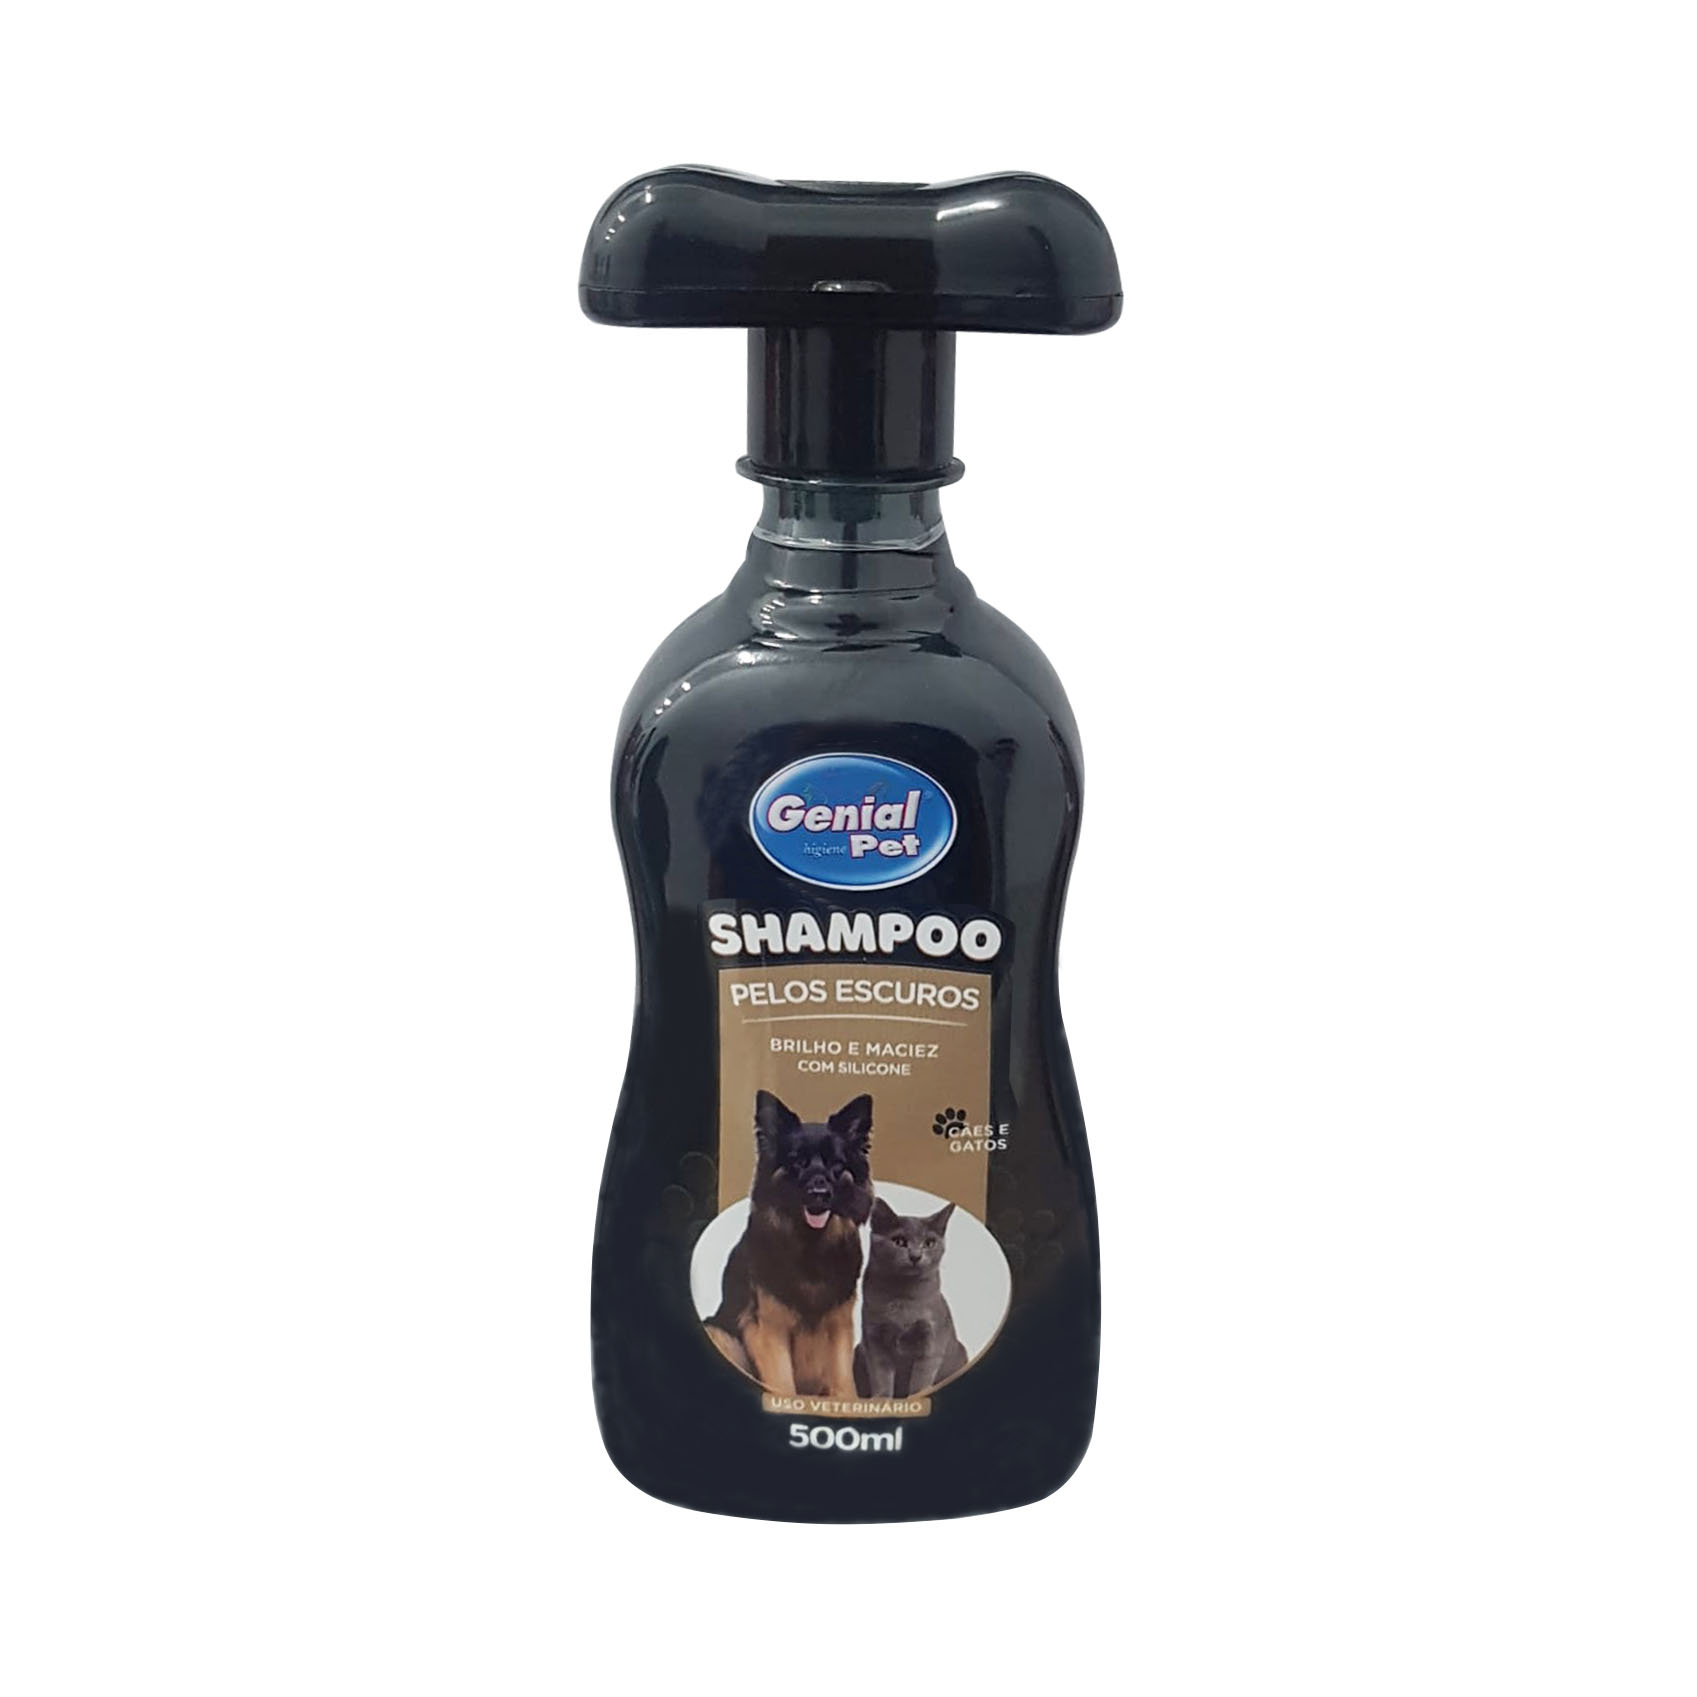 Shampoo Genial Pet Pelos Escuros para Cães e Gatos 500ml